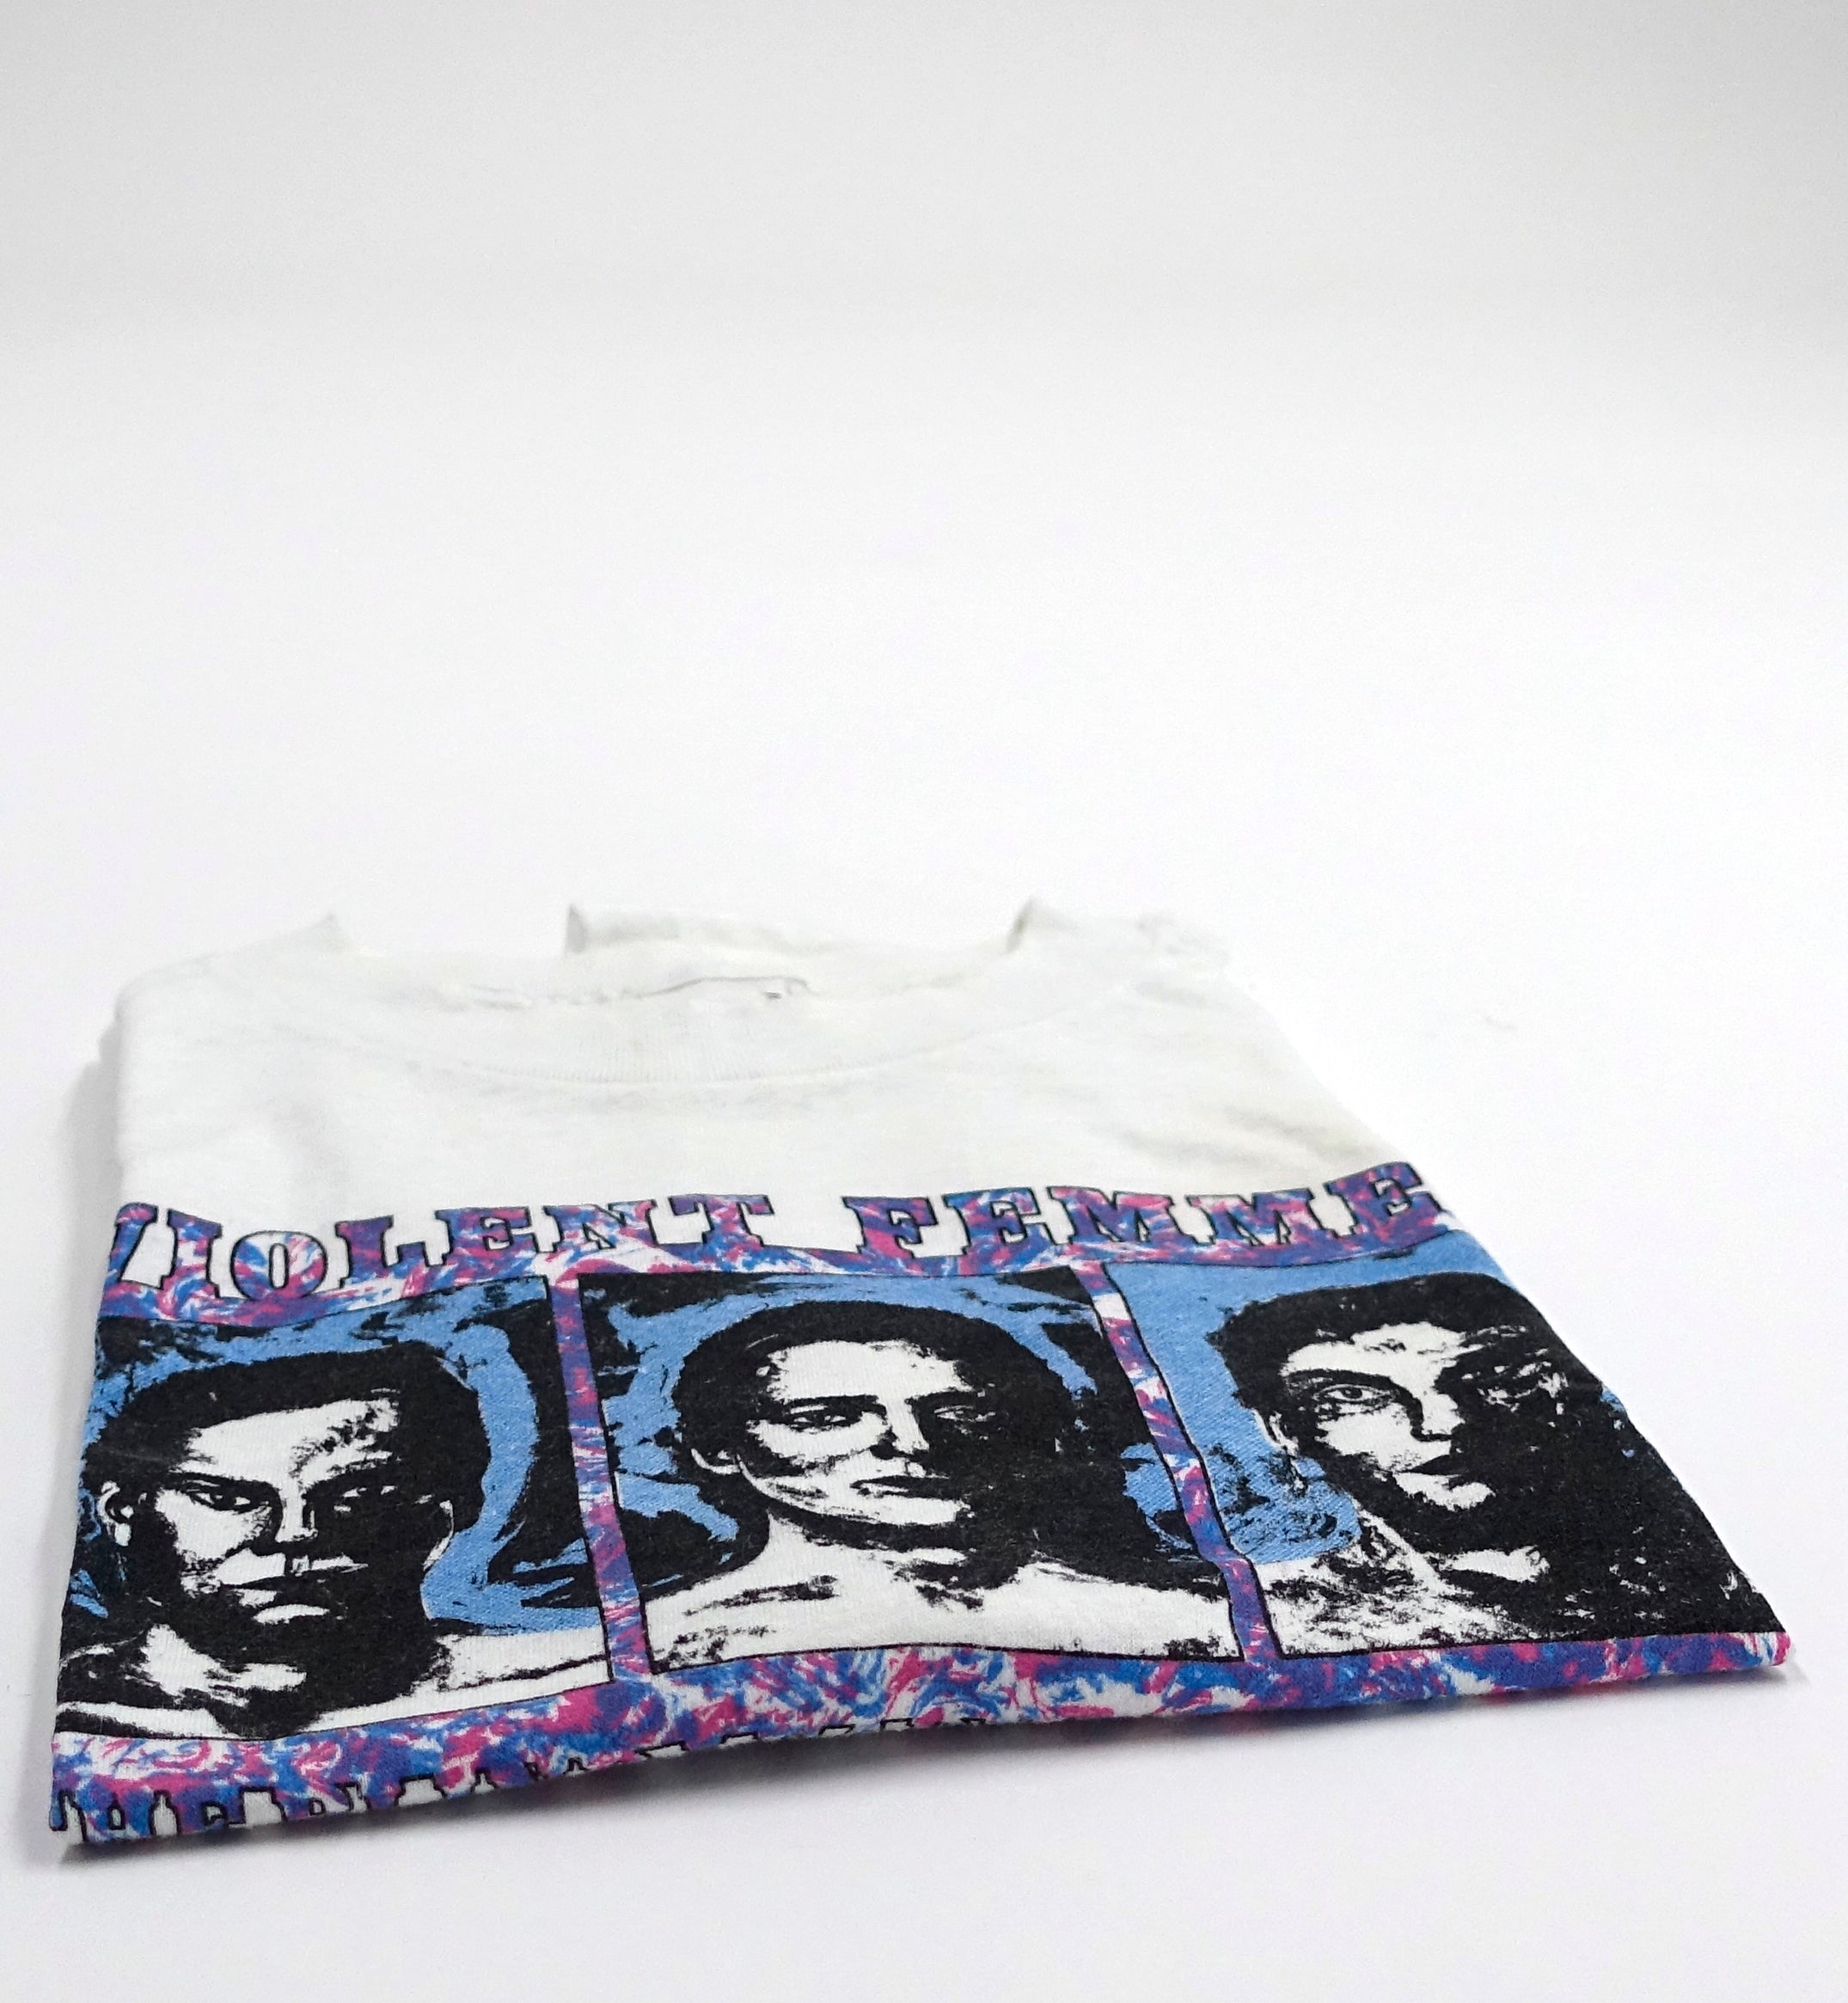 Violent Femmes - Blind Leading The Naked 1986 Tour Shirt Size XL